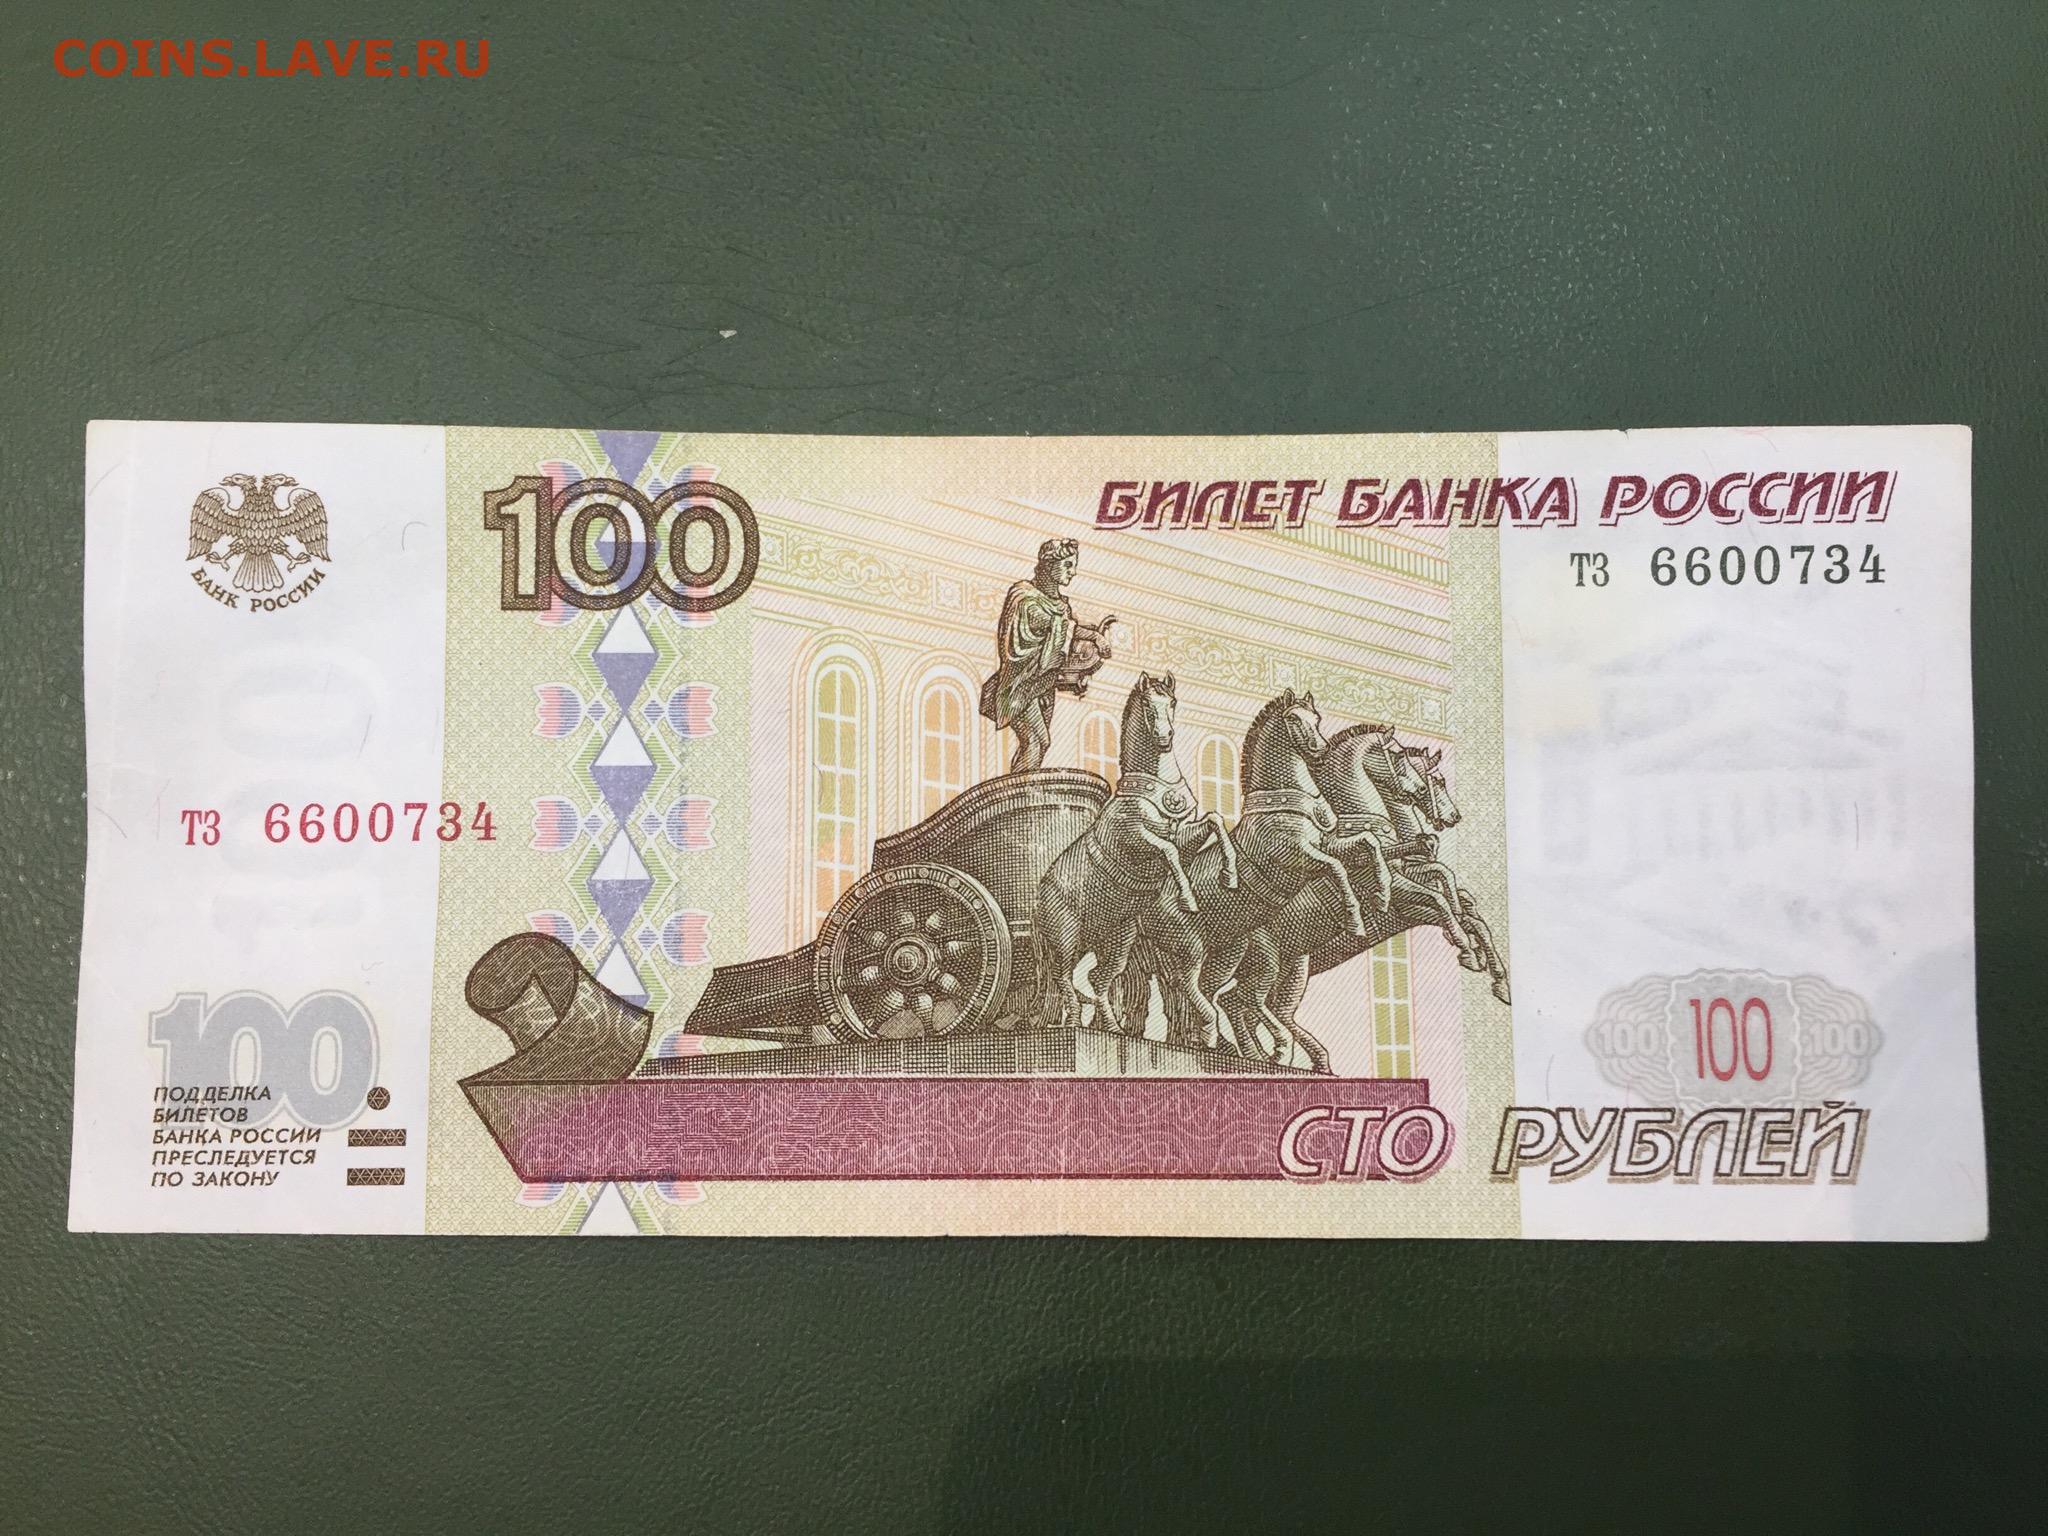 Четыре сто рублей. СТО рублей до 1997.